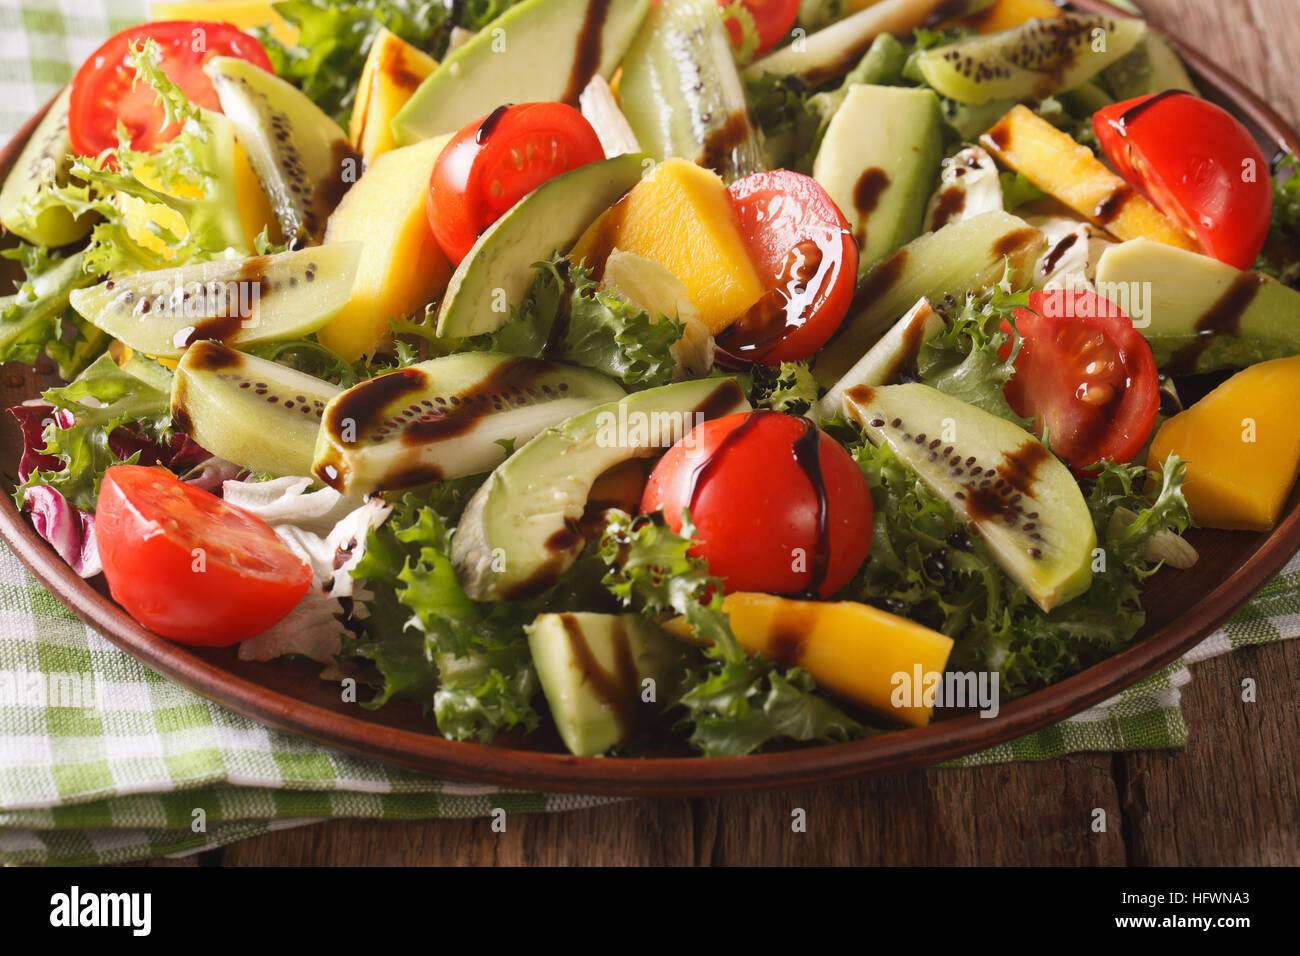 Fruit vegetable salad of mango, avocado, kiwi, tomato and lettuce on a plate close-up. horizontal Stock Photo